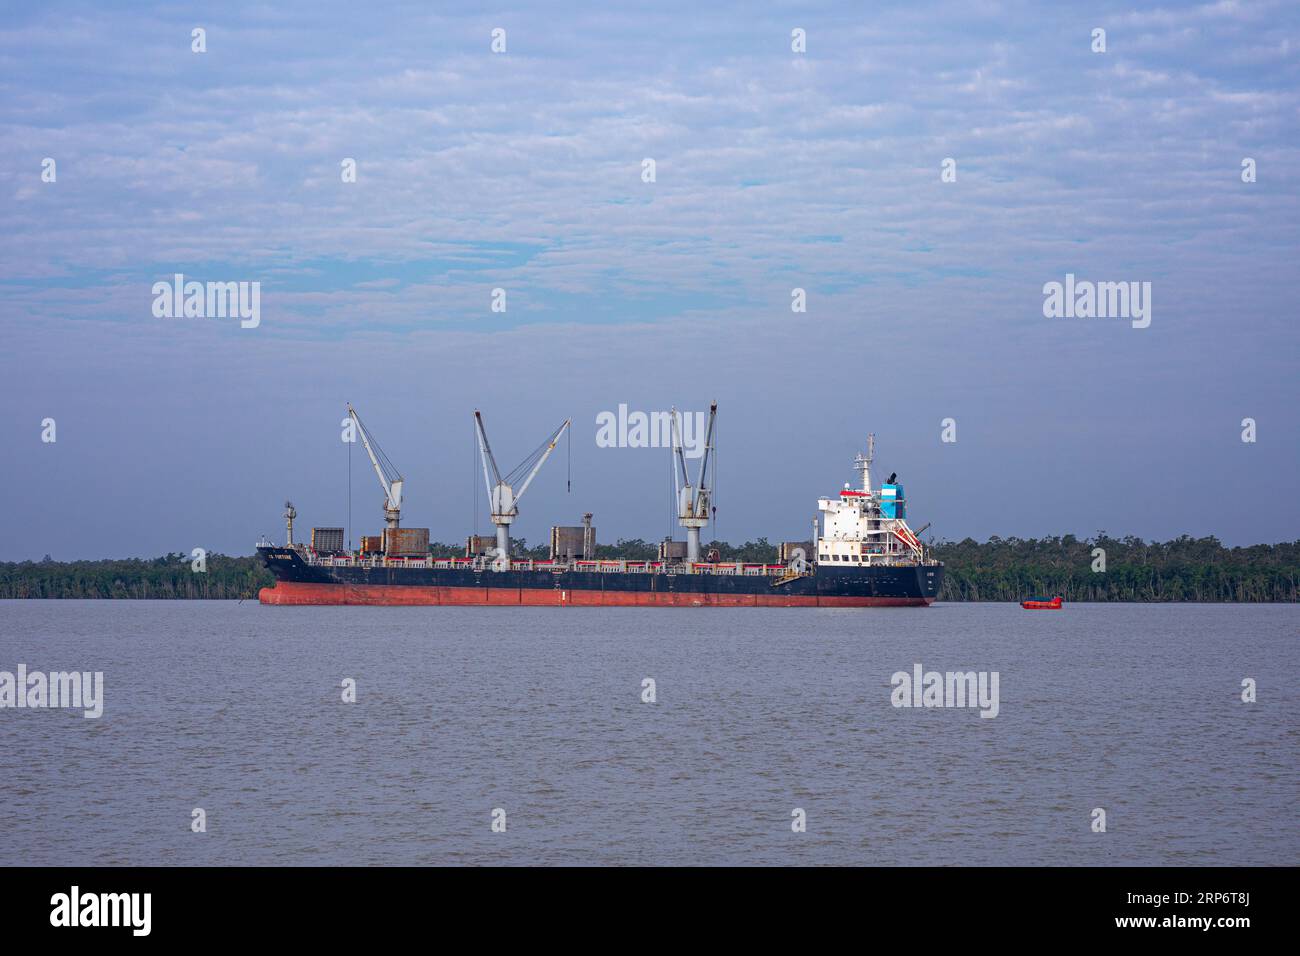 Ein ausländisches Schiff, das am Pashur River an der äußeren Ankerstelle des Hafens von Mongla ankerte. Dies ist der zweitgrößte Seehafen in Bangladesch. Bagerhat, Bang Stockfoto